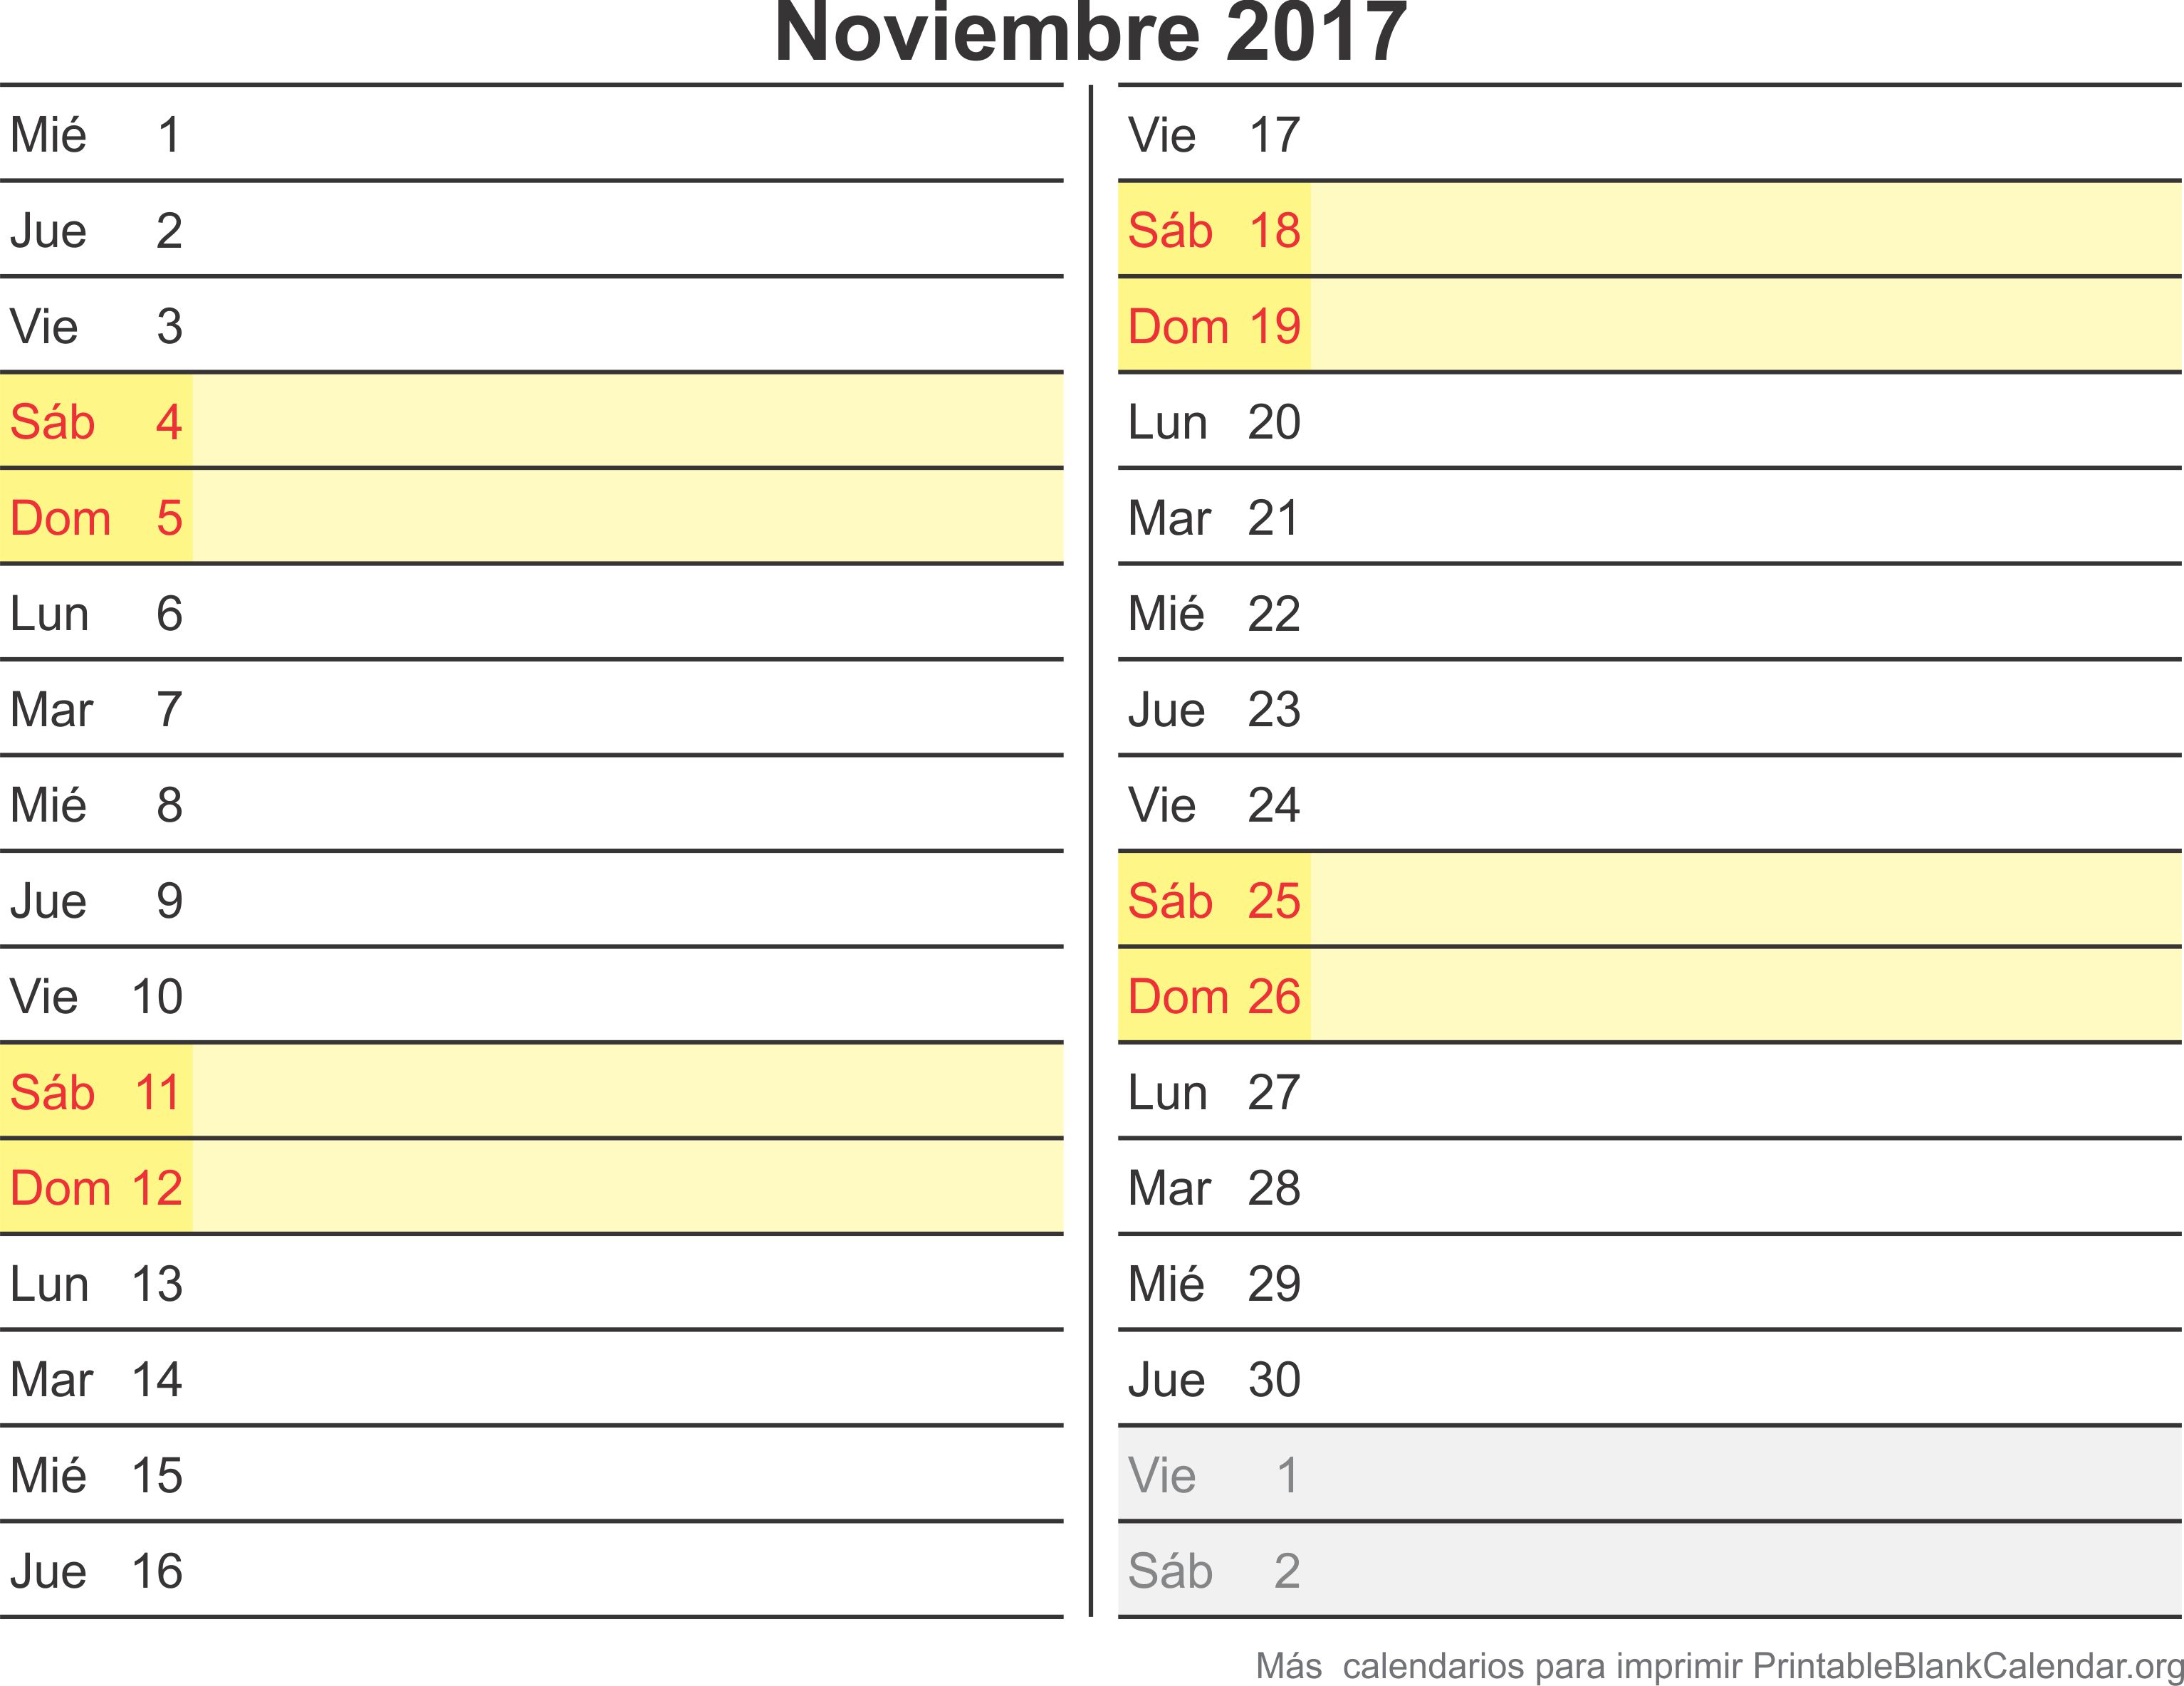 noviembre 2017 agenda